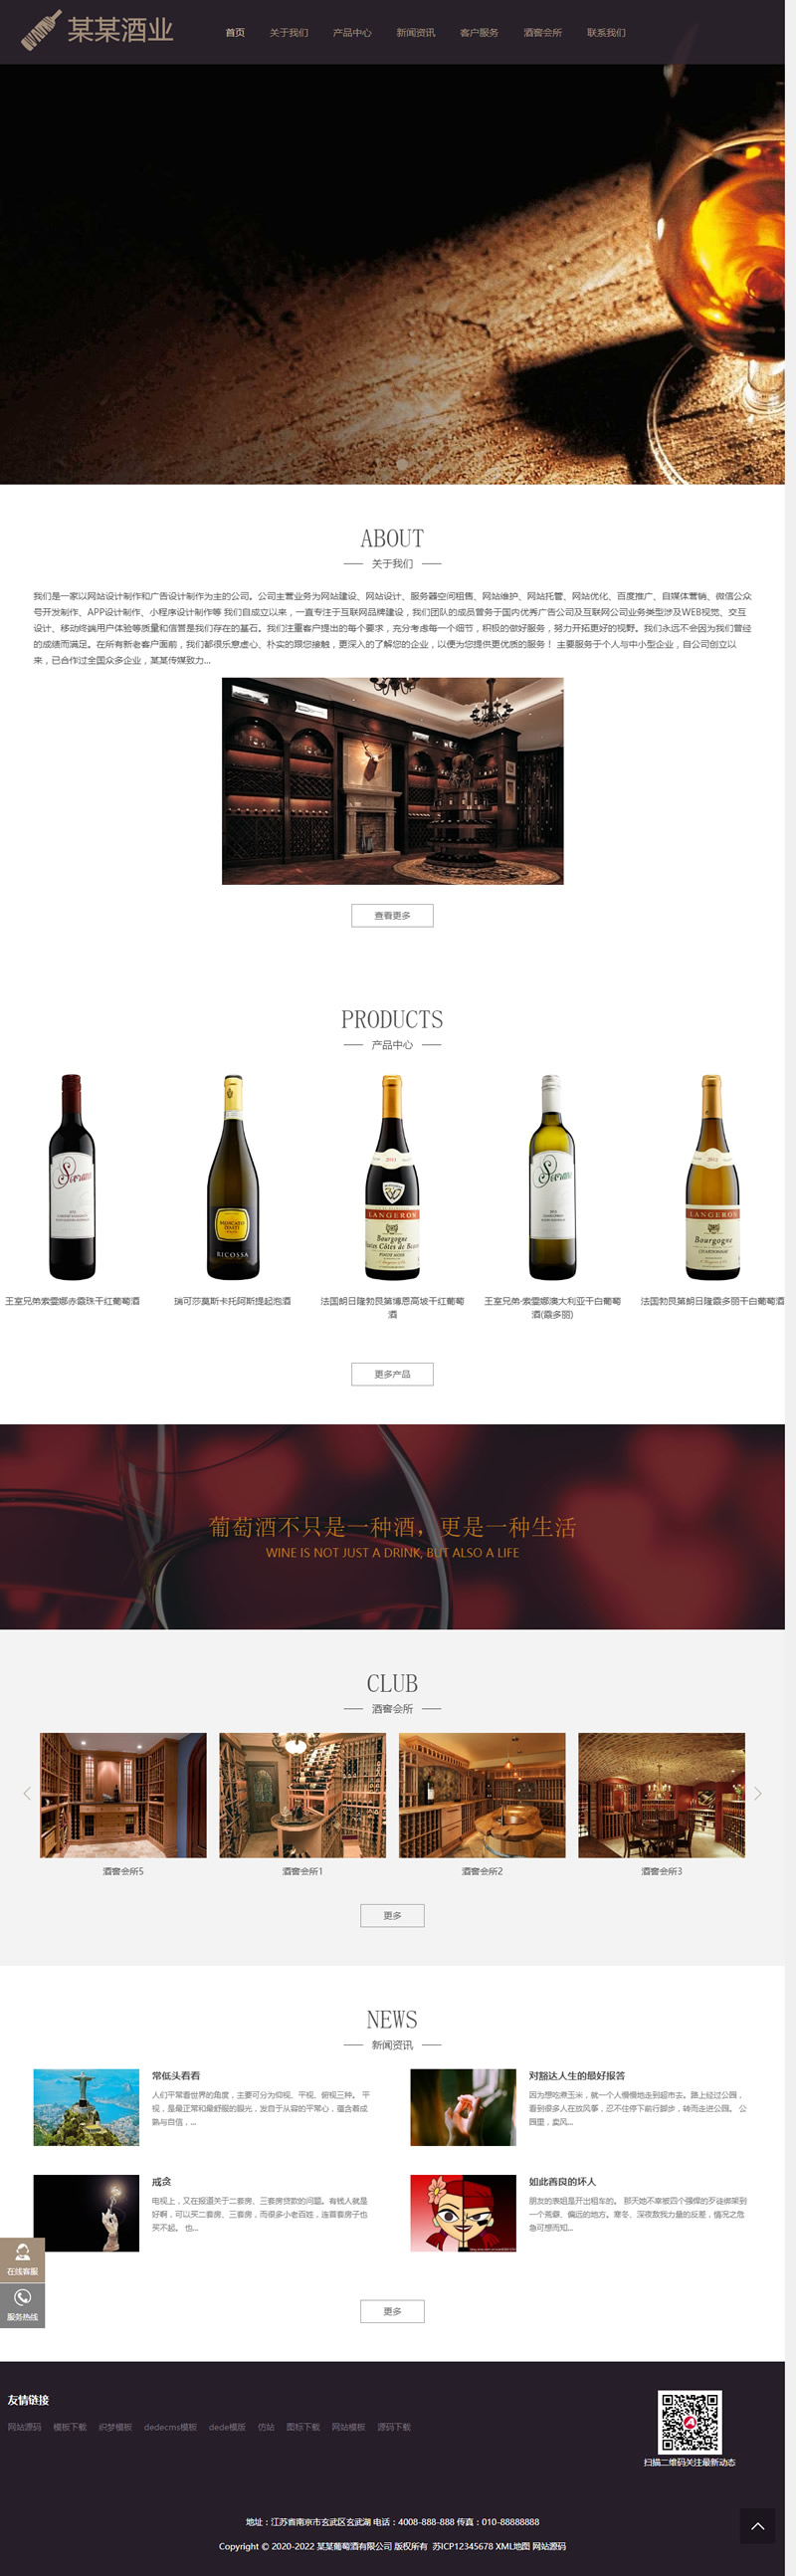 响应式高端藏酒酒业酒窖网站源码 HTML5葡萄酒酒业网站织梦模板 (自适应手机版)